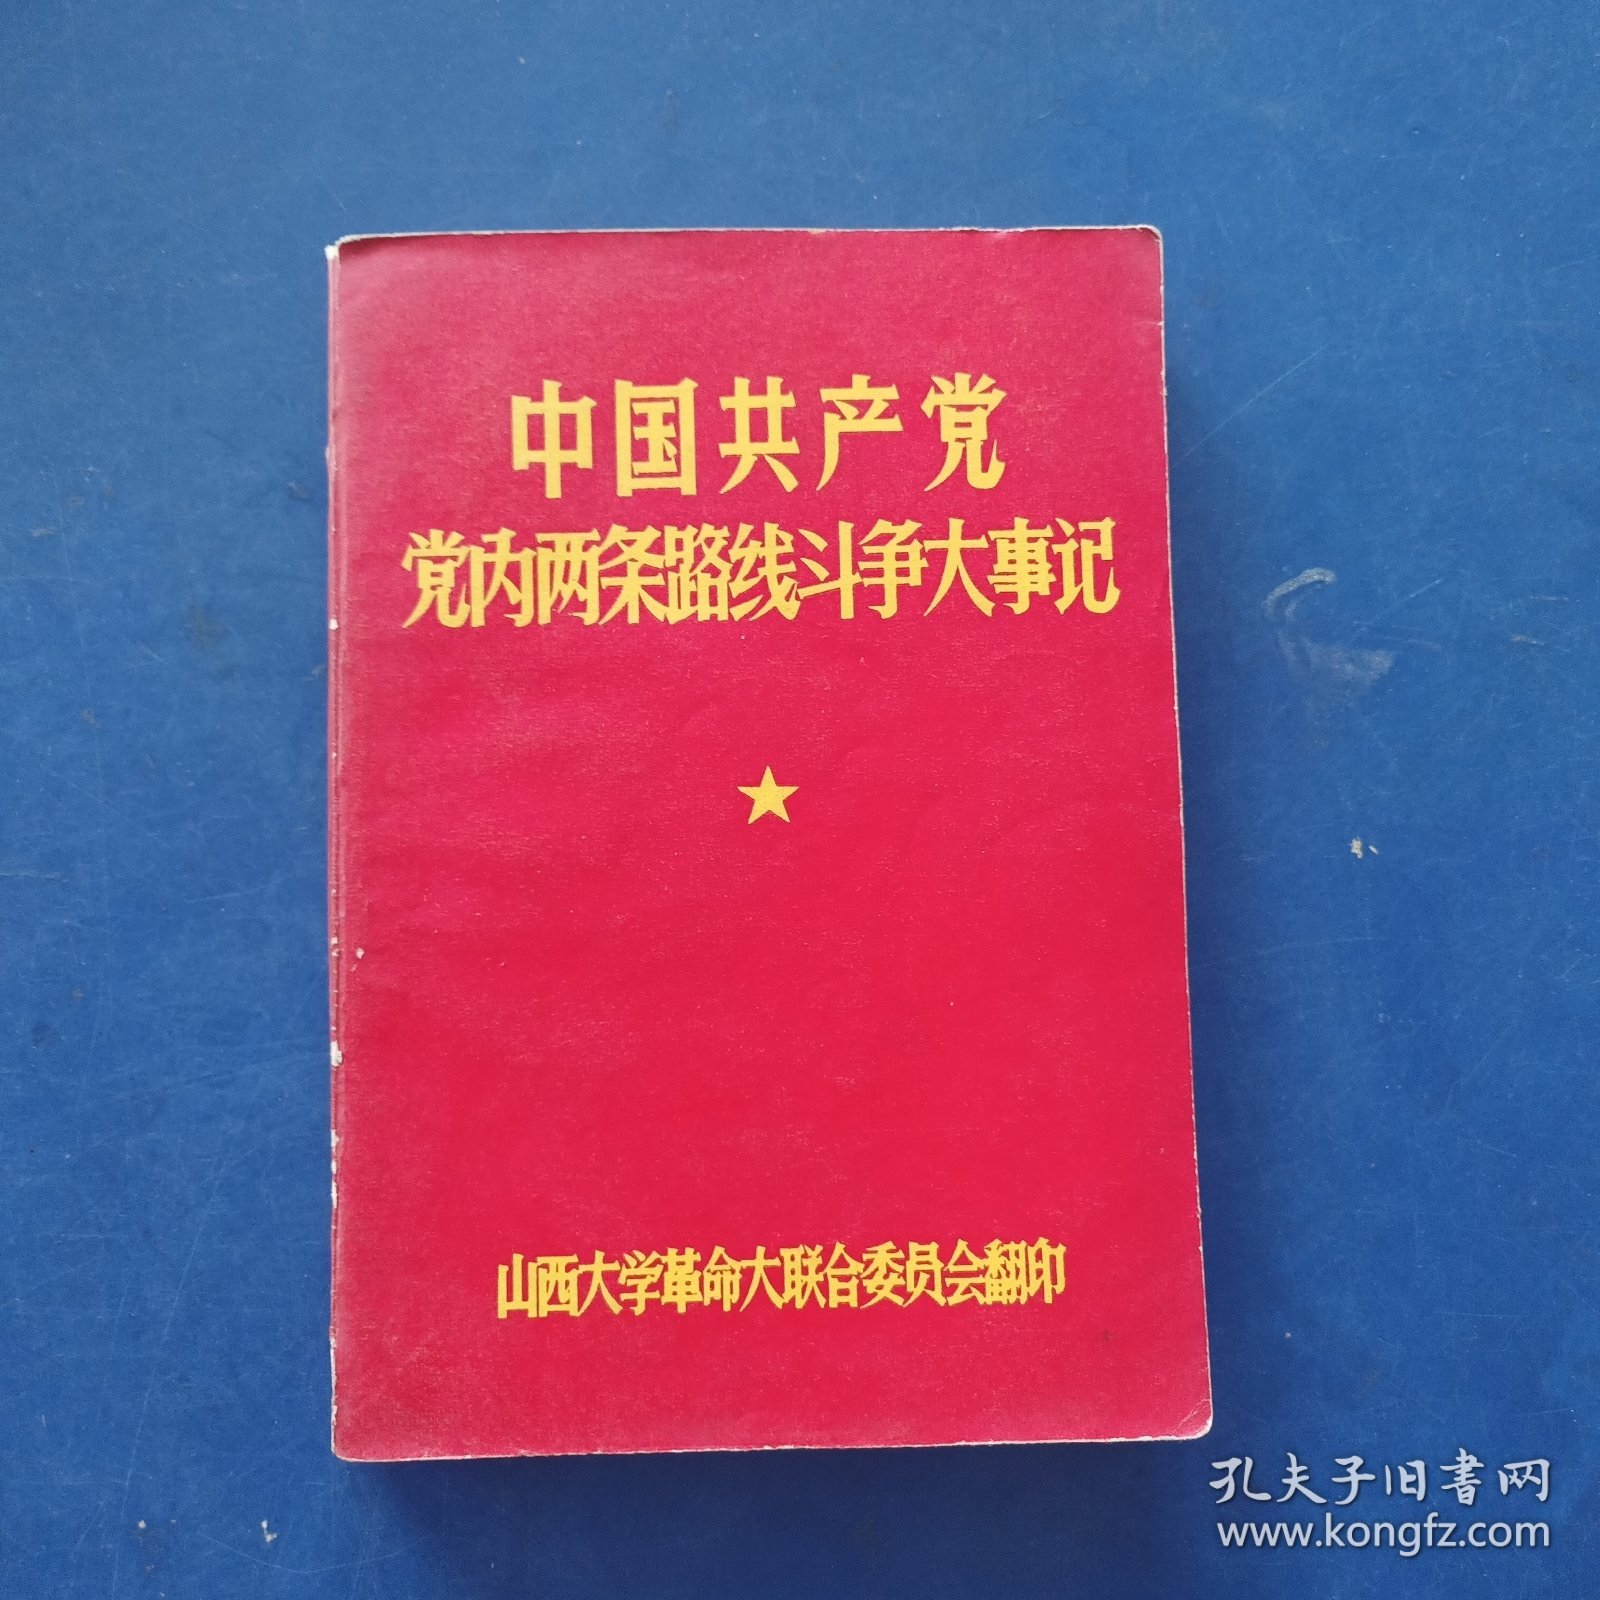 中国共产党党内两条路线斗争大事记 后几张有印渍看图，可以阅读